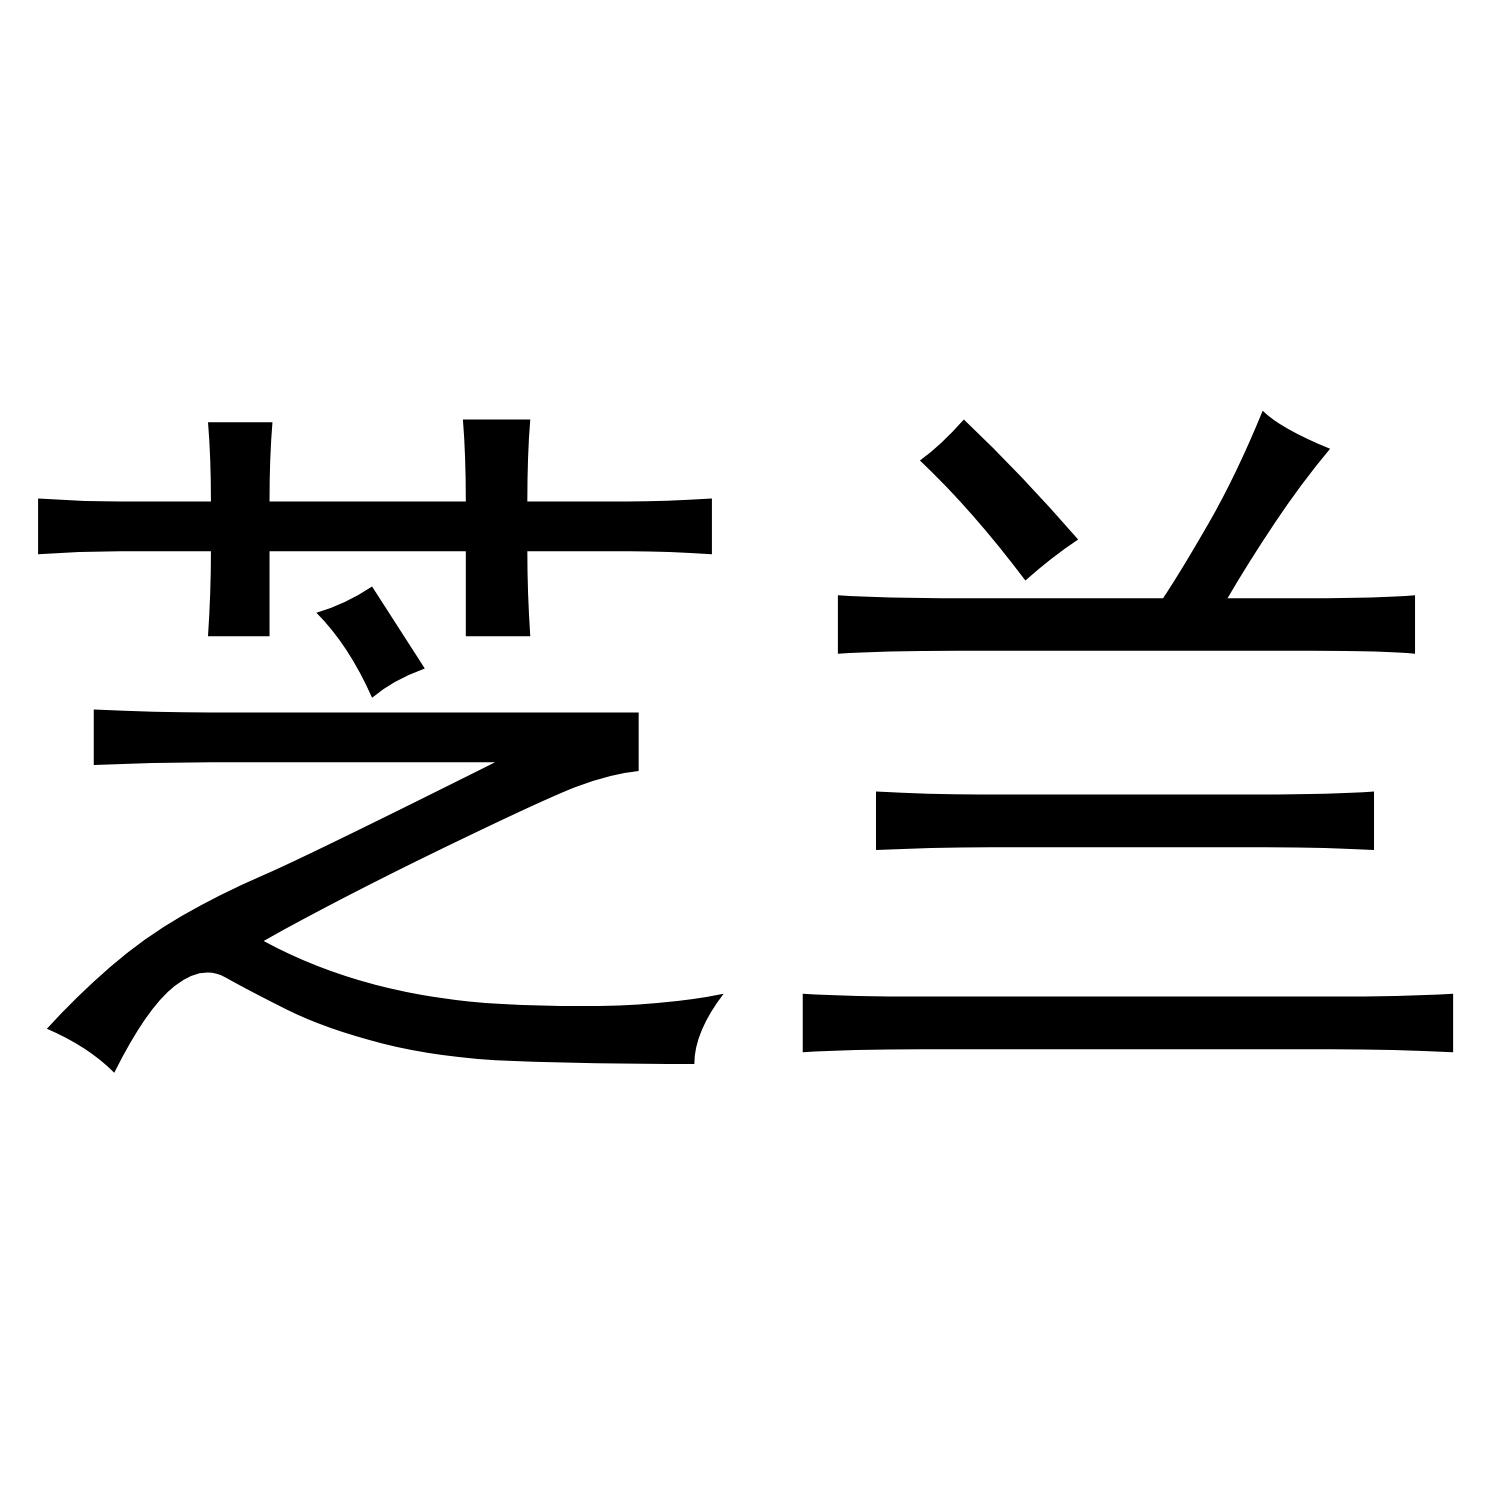 兰芝品牌logo图片